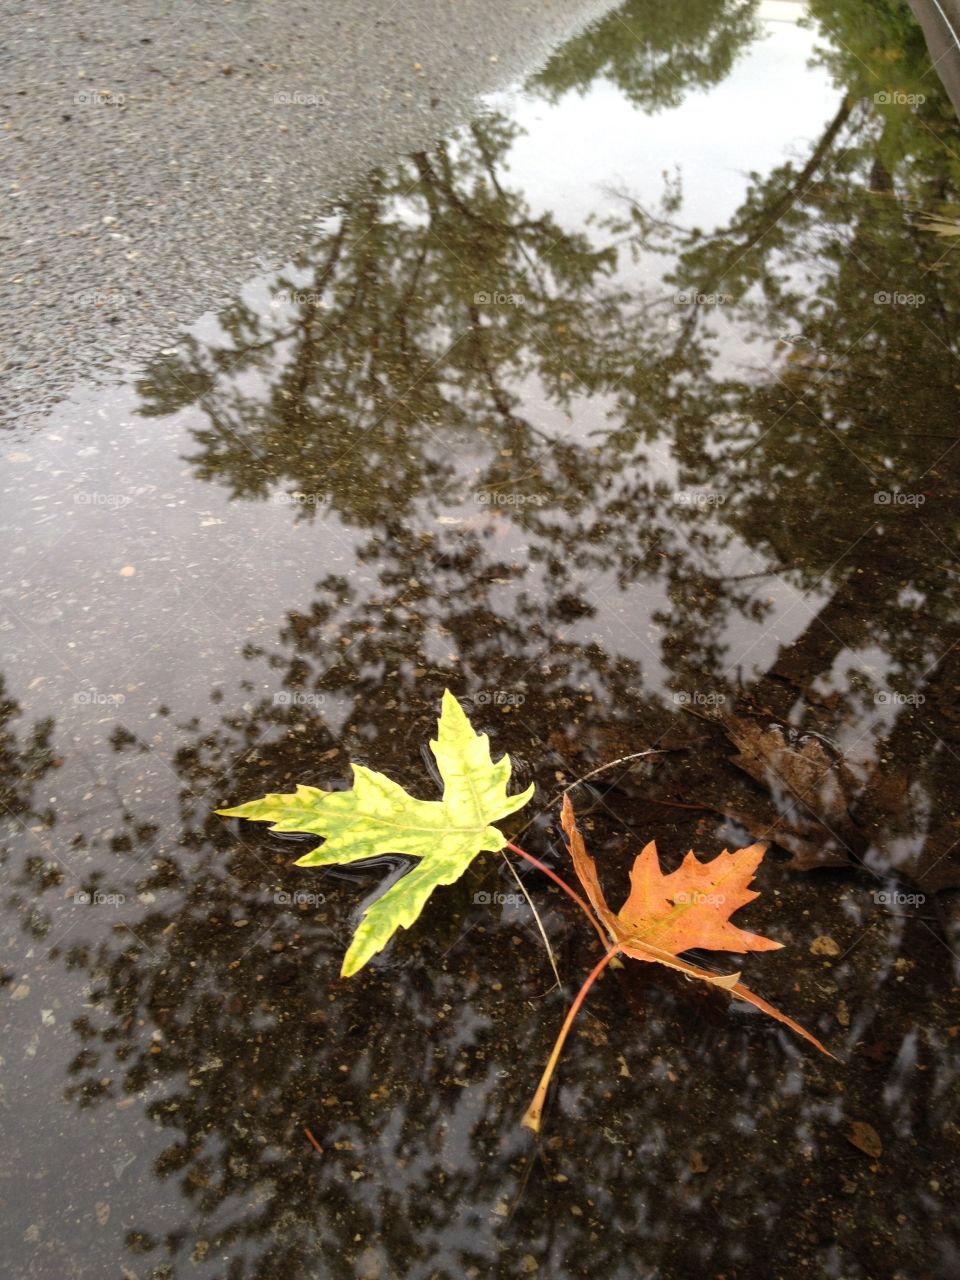 Autumn puddle - It’s Autumn Time Mission